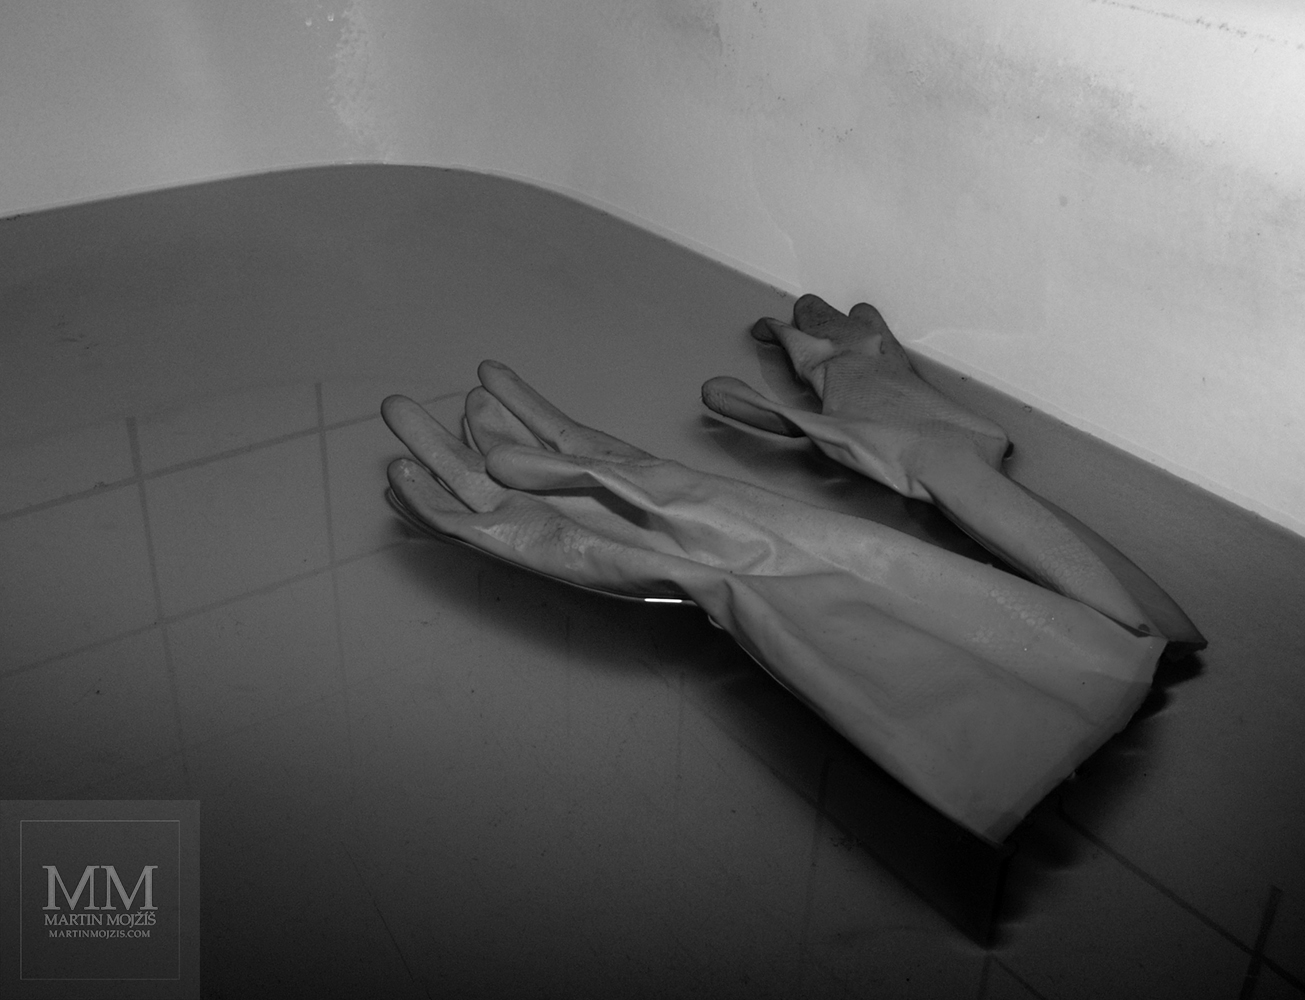 Gumové rukavice plovoucí na hladině vody ve vaně. Fotografie s názvem PLAVAJÍCÍ.